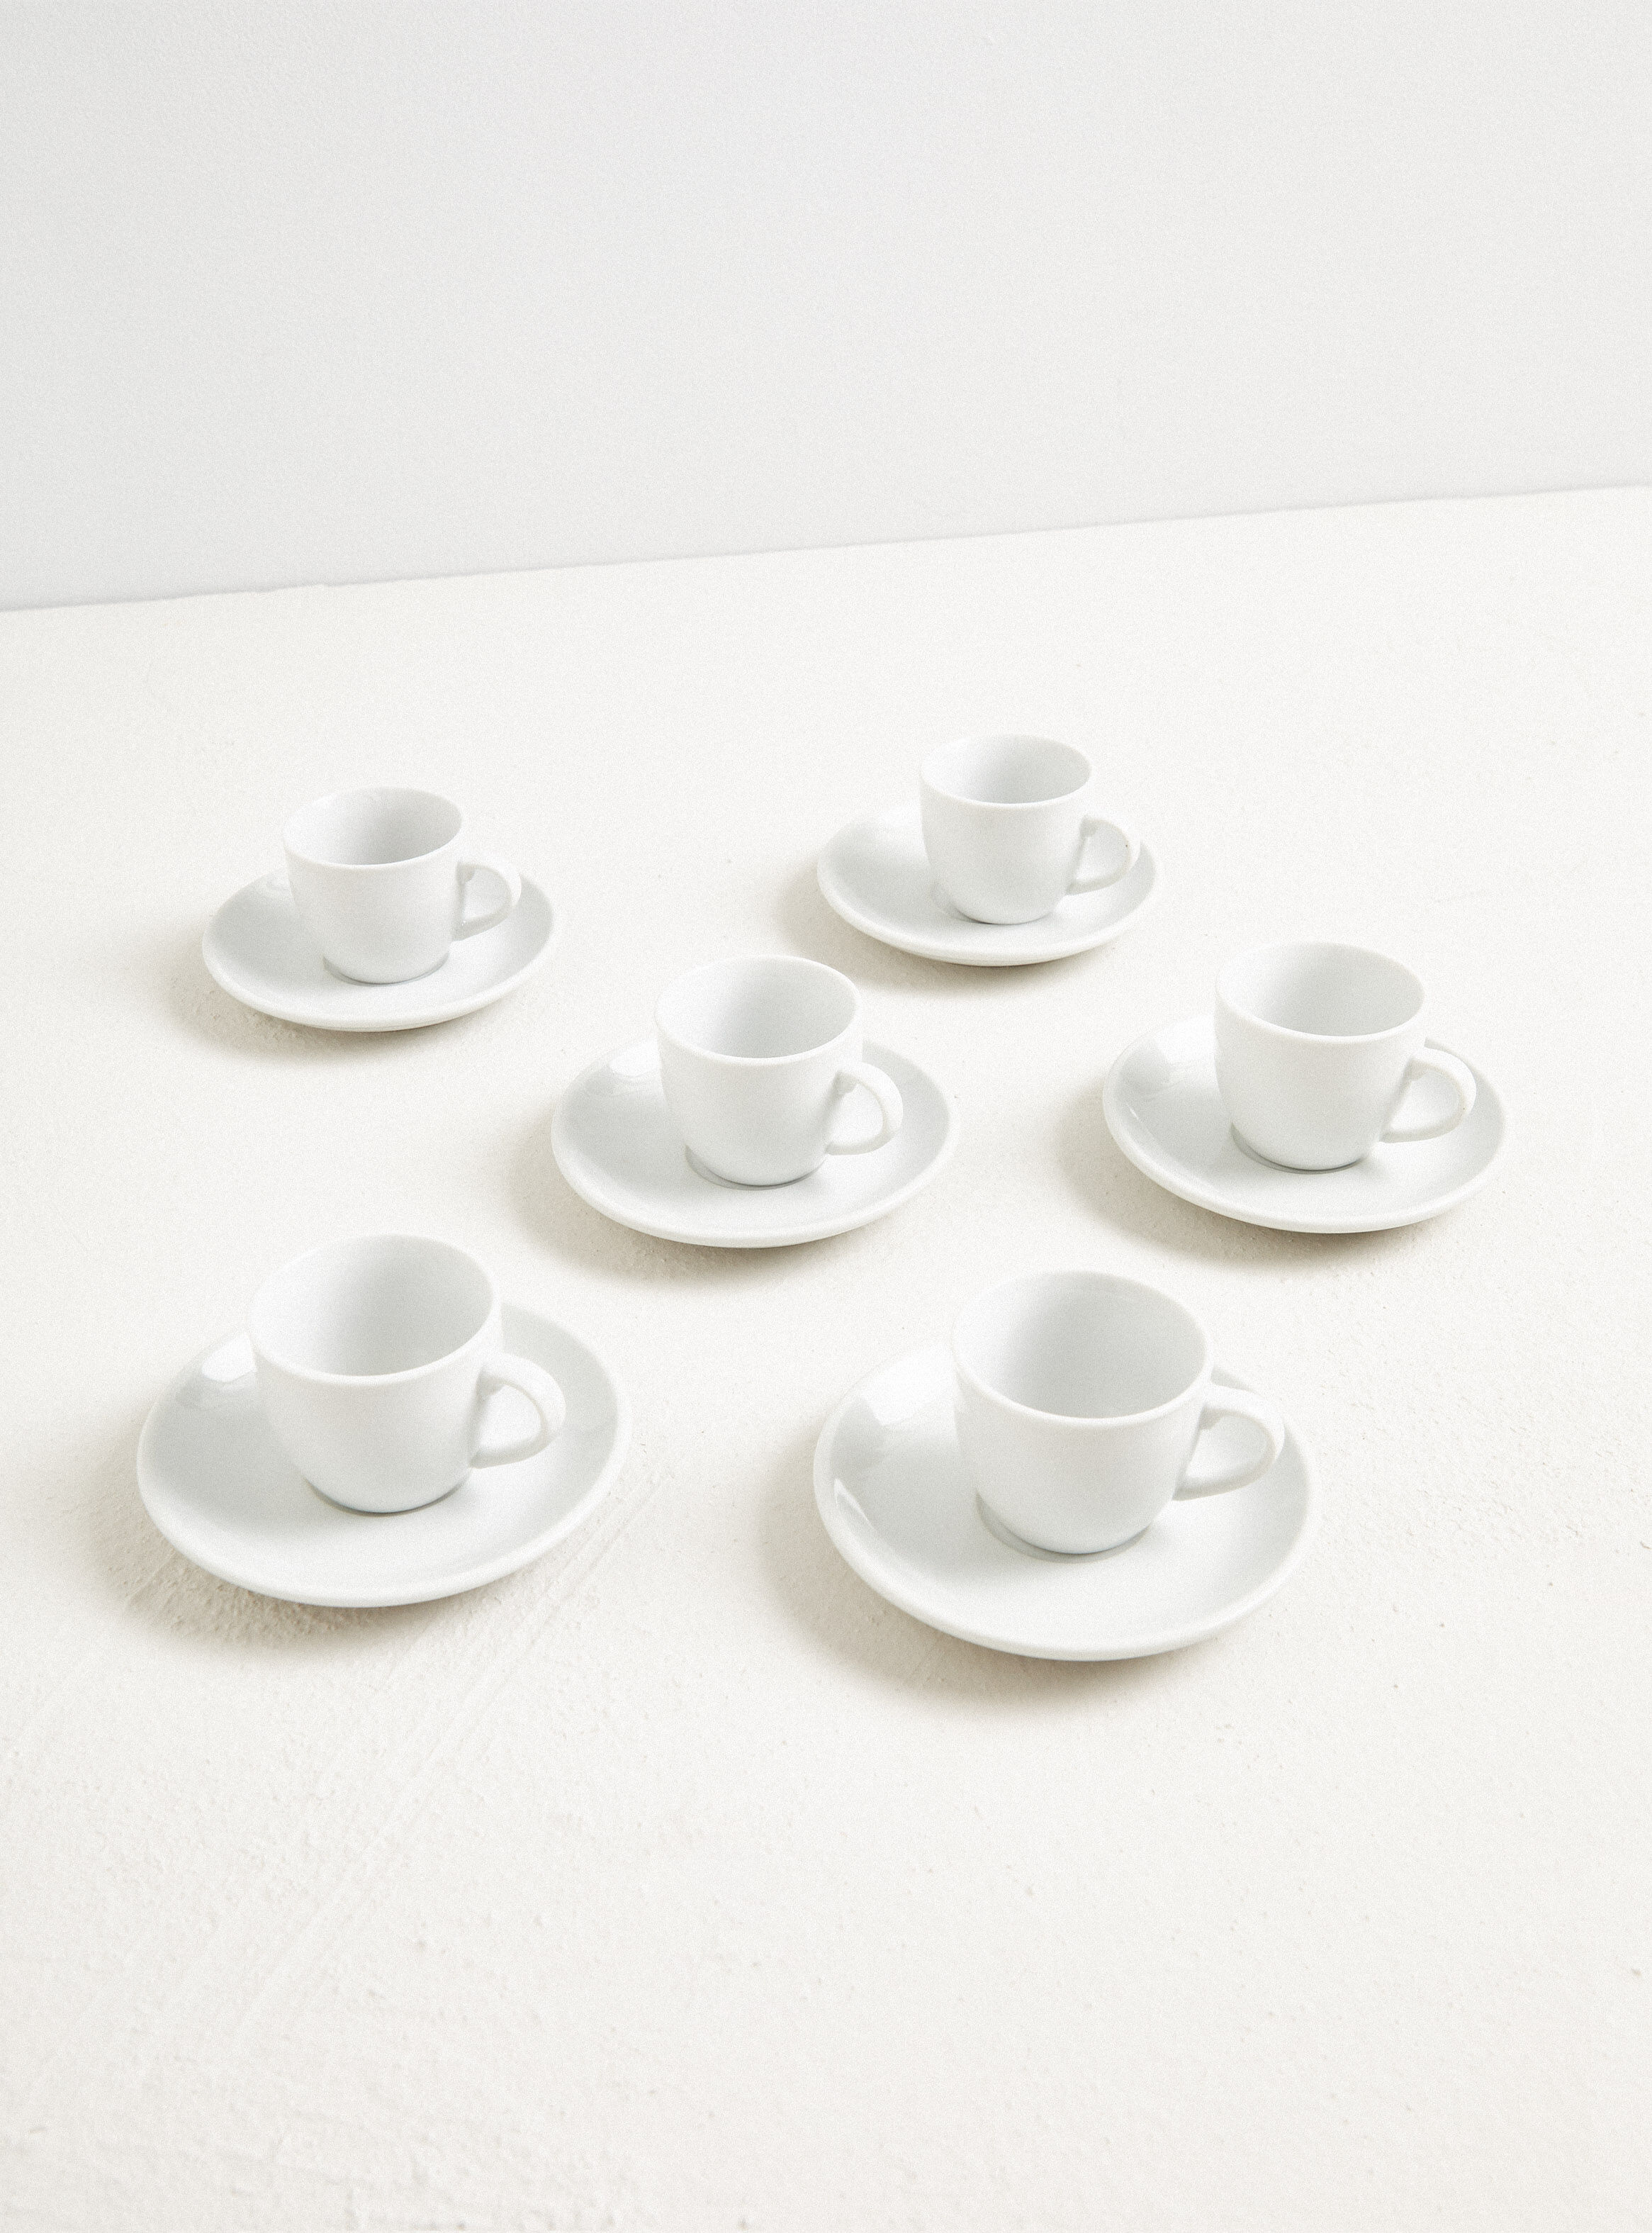 El soporte ideal para las tazas de espresso - 4 Home Menaje